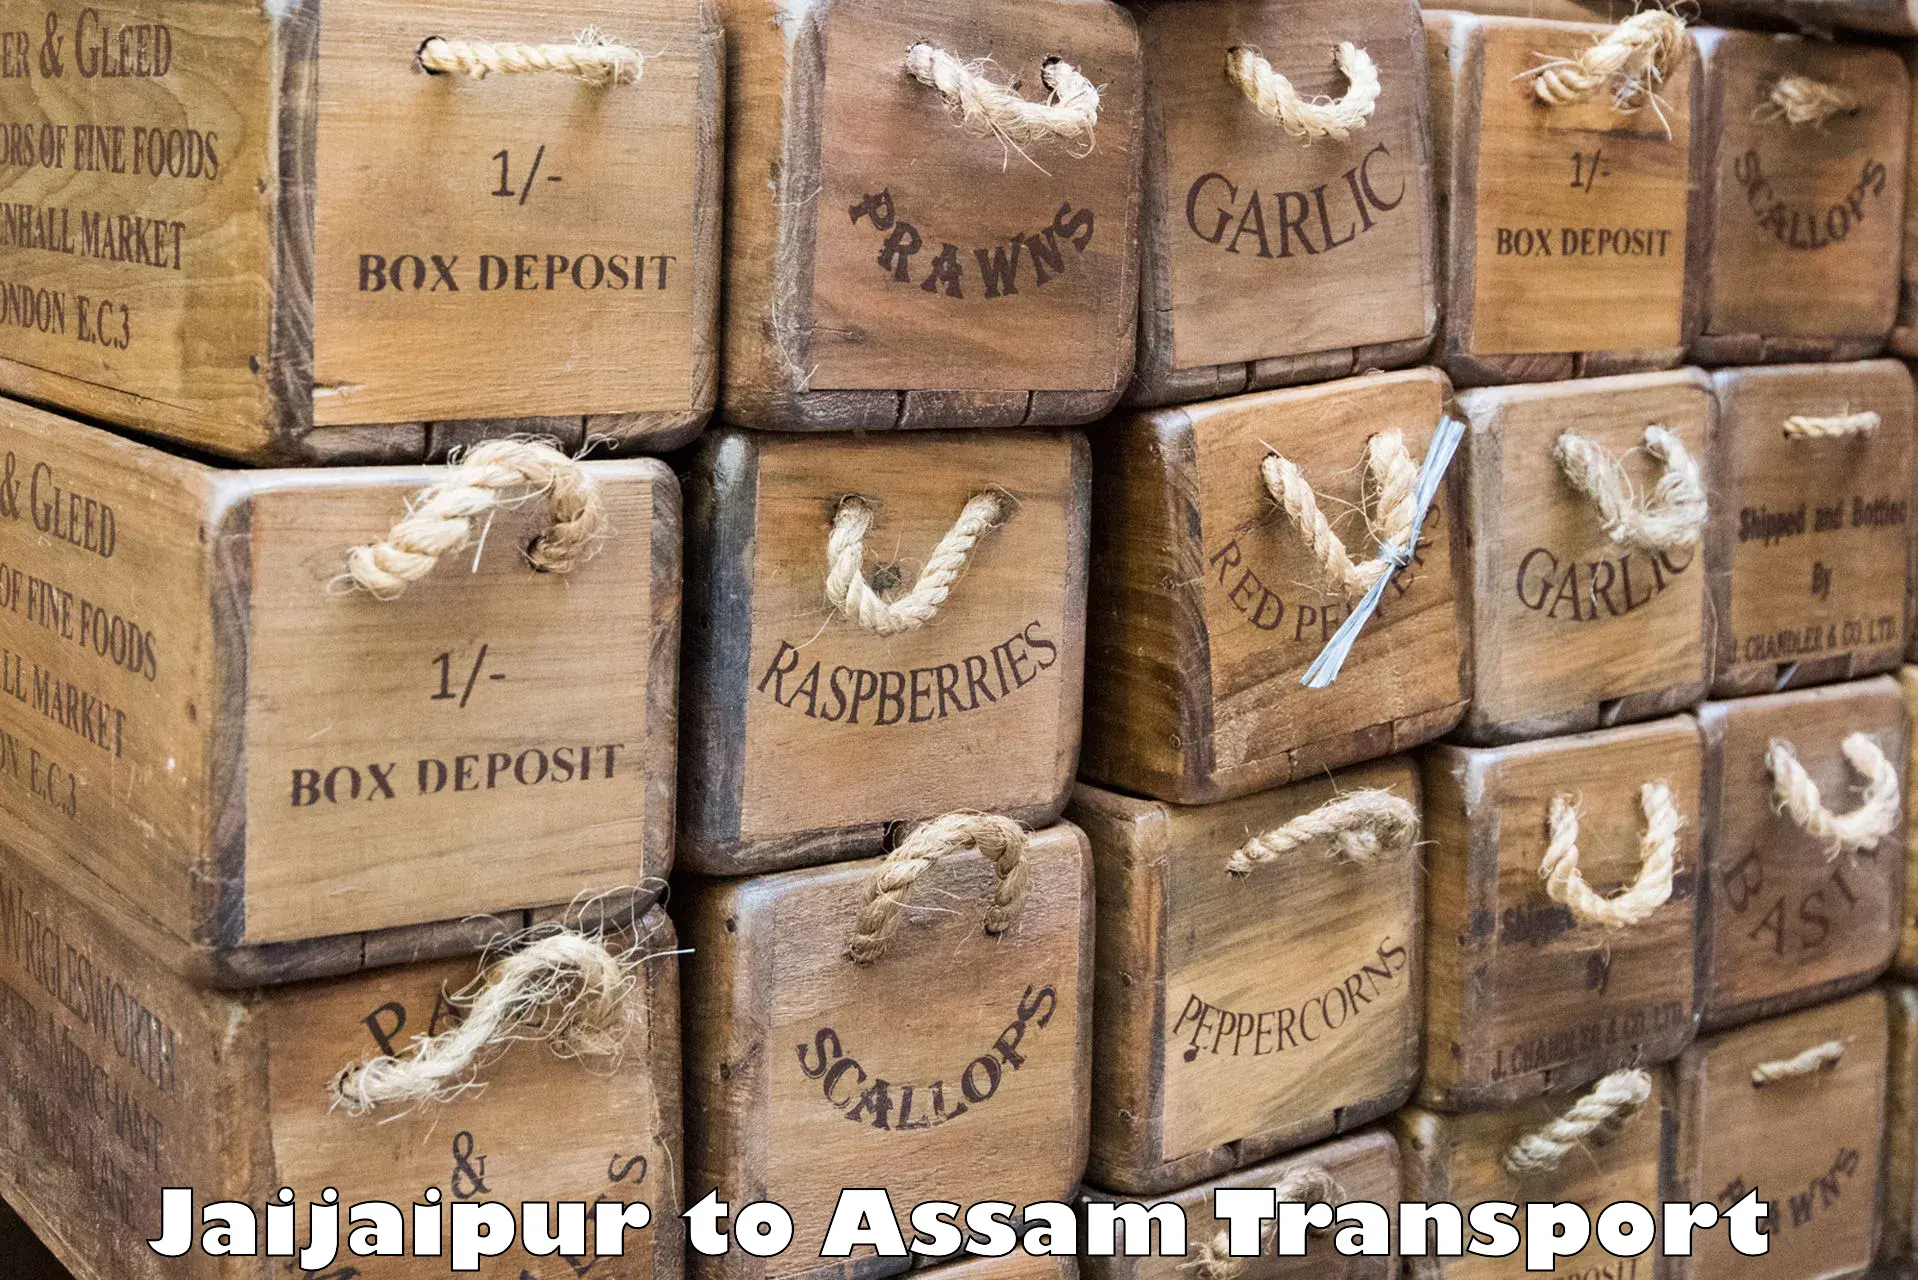 Furniture transport service Jaijaipur to Hajo